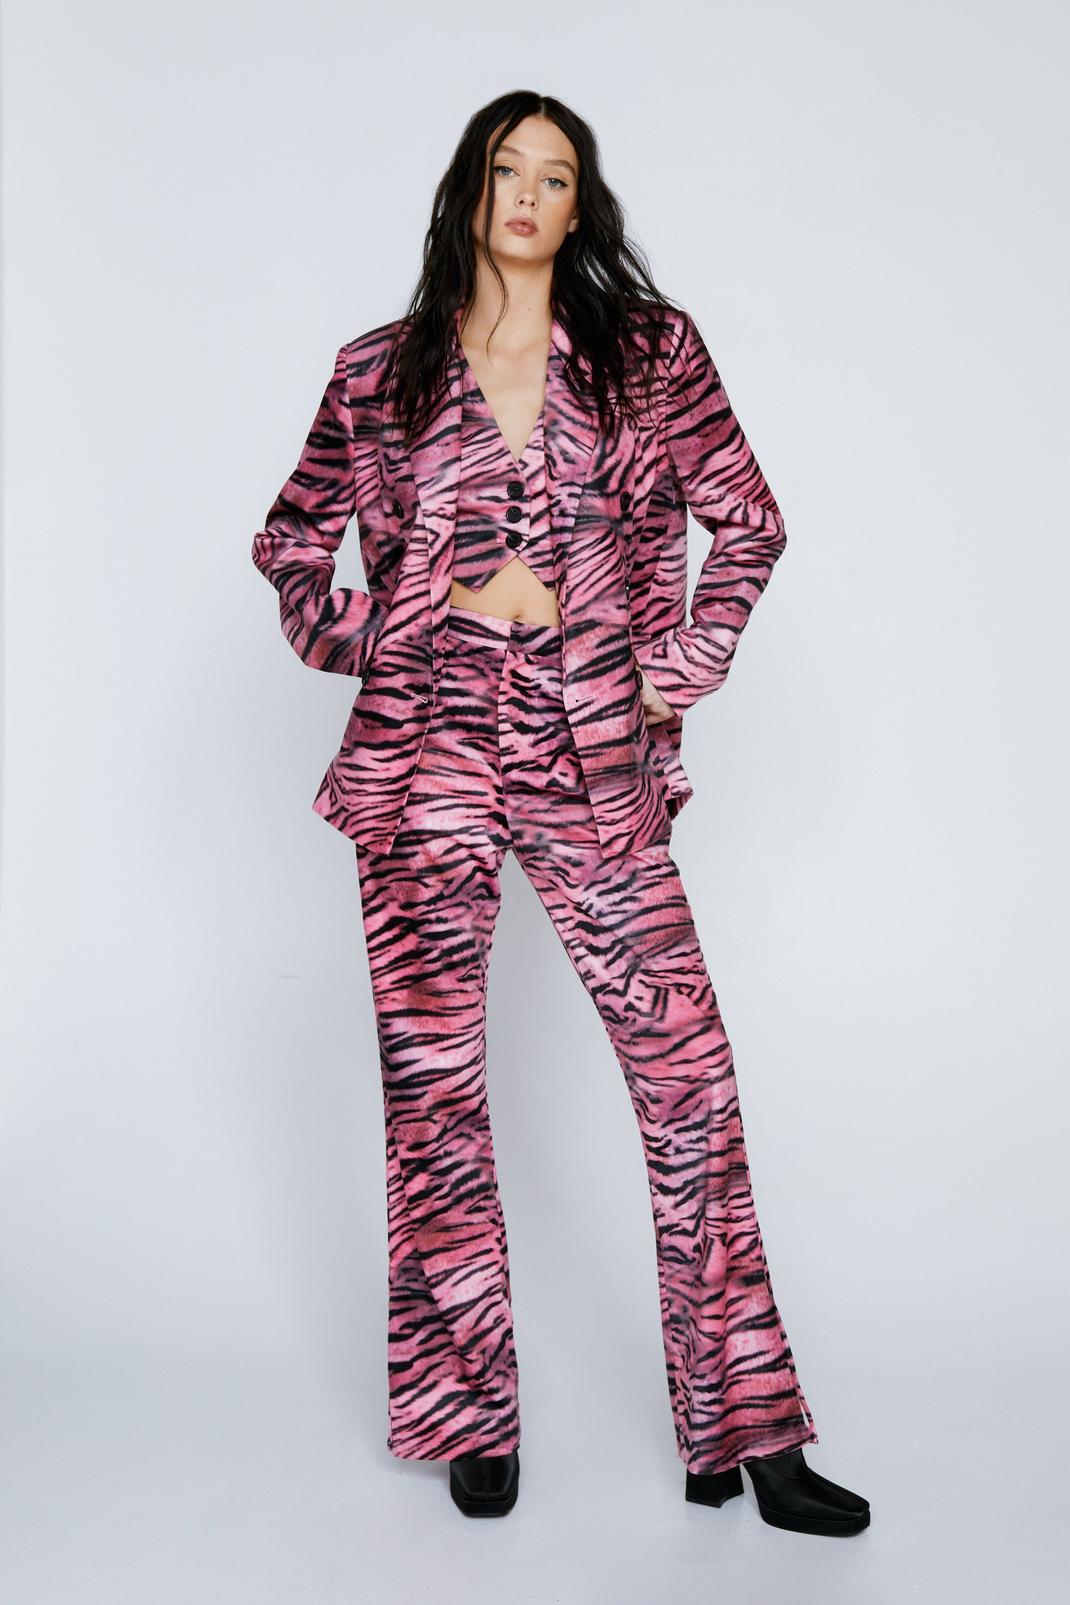 Velvet Pants for the New Year – Styled Zebra